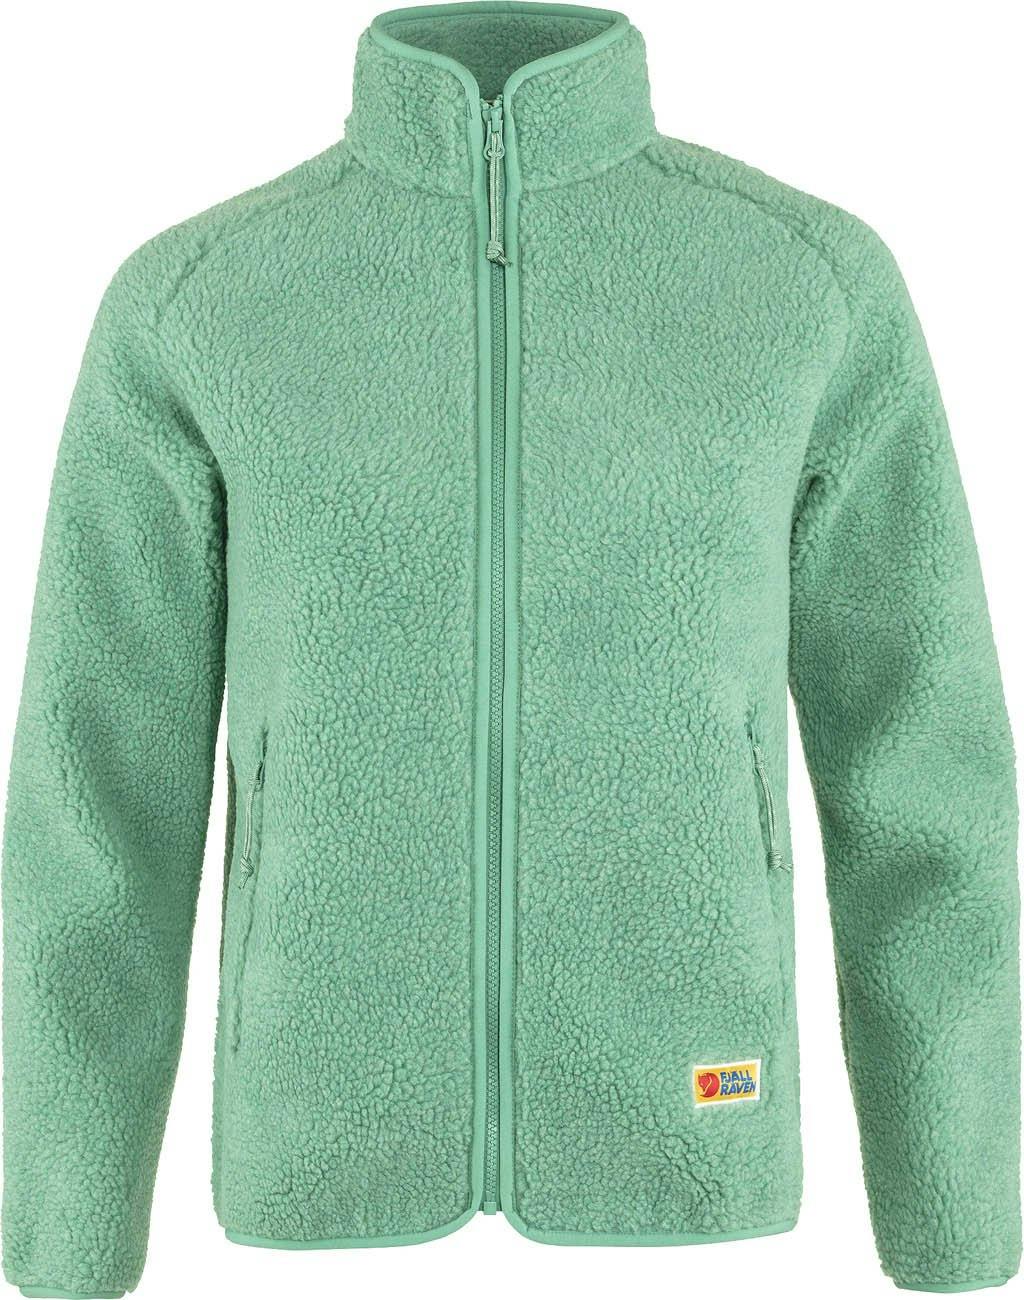 Product image for Vardag Pile Fleece Jacket - Women's